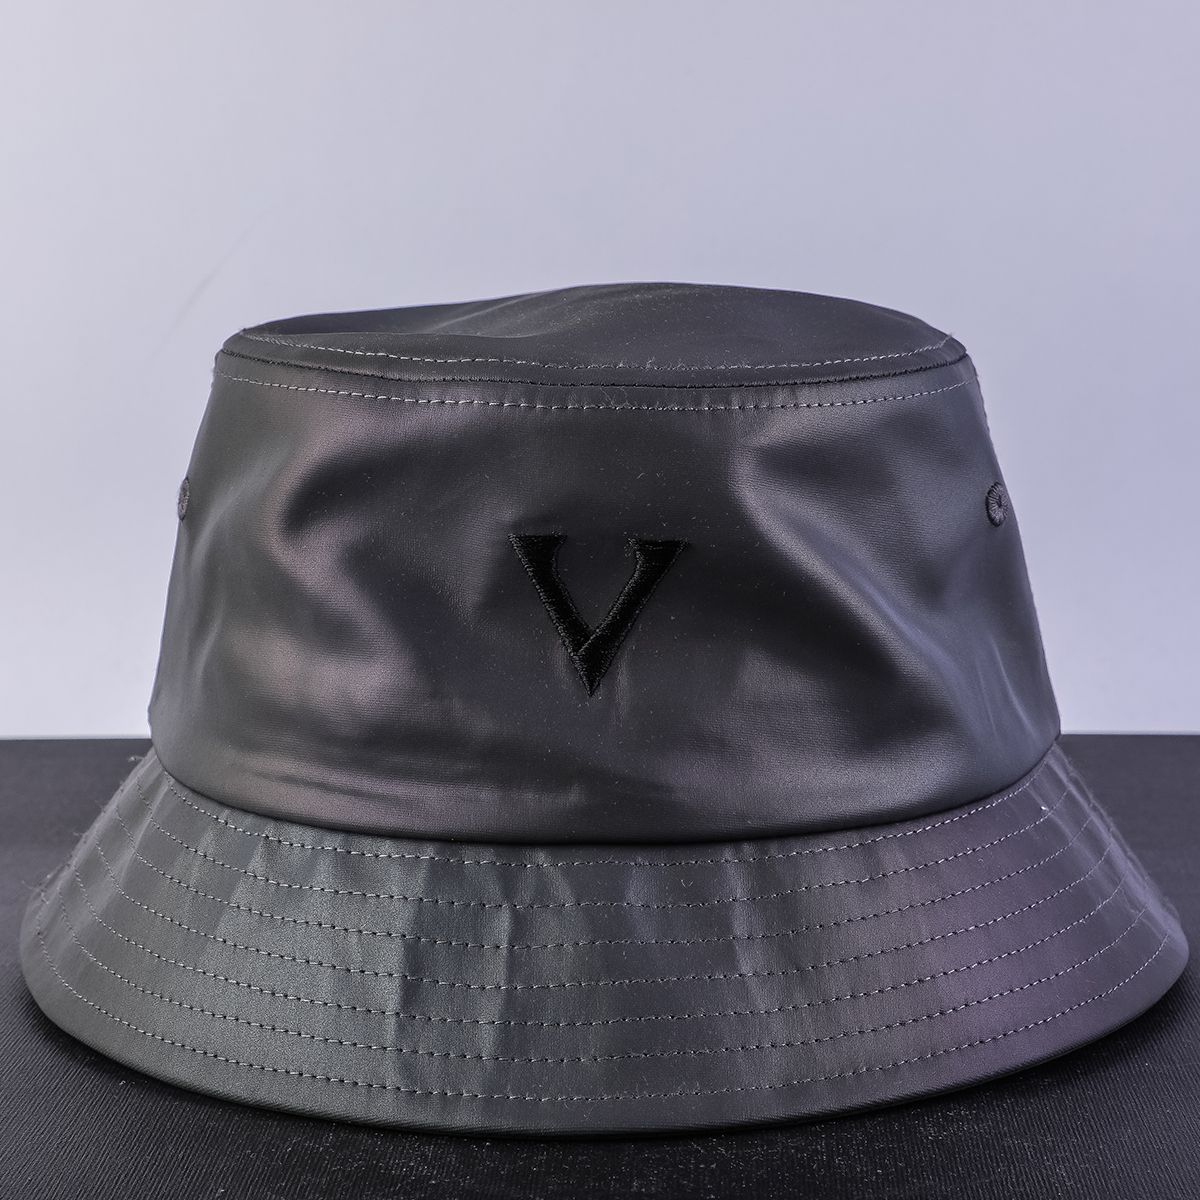 التطريز vfa شعار القبعات دلو أسود مخصص